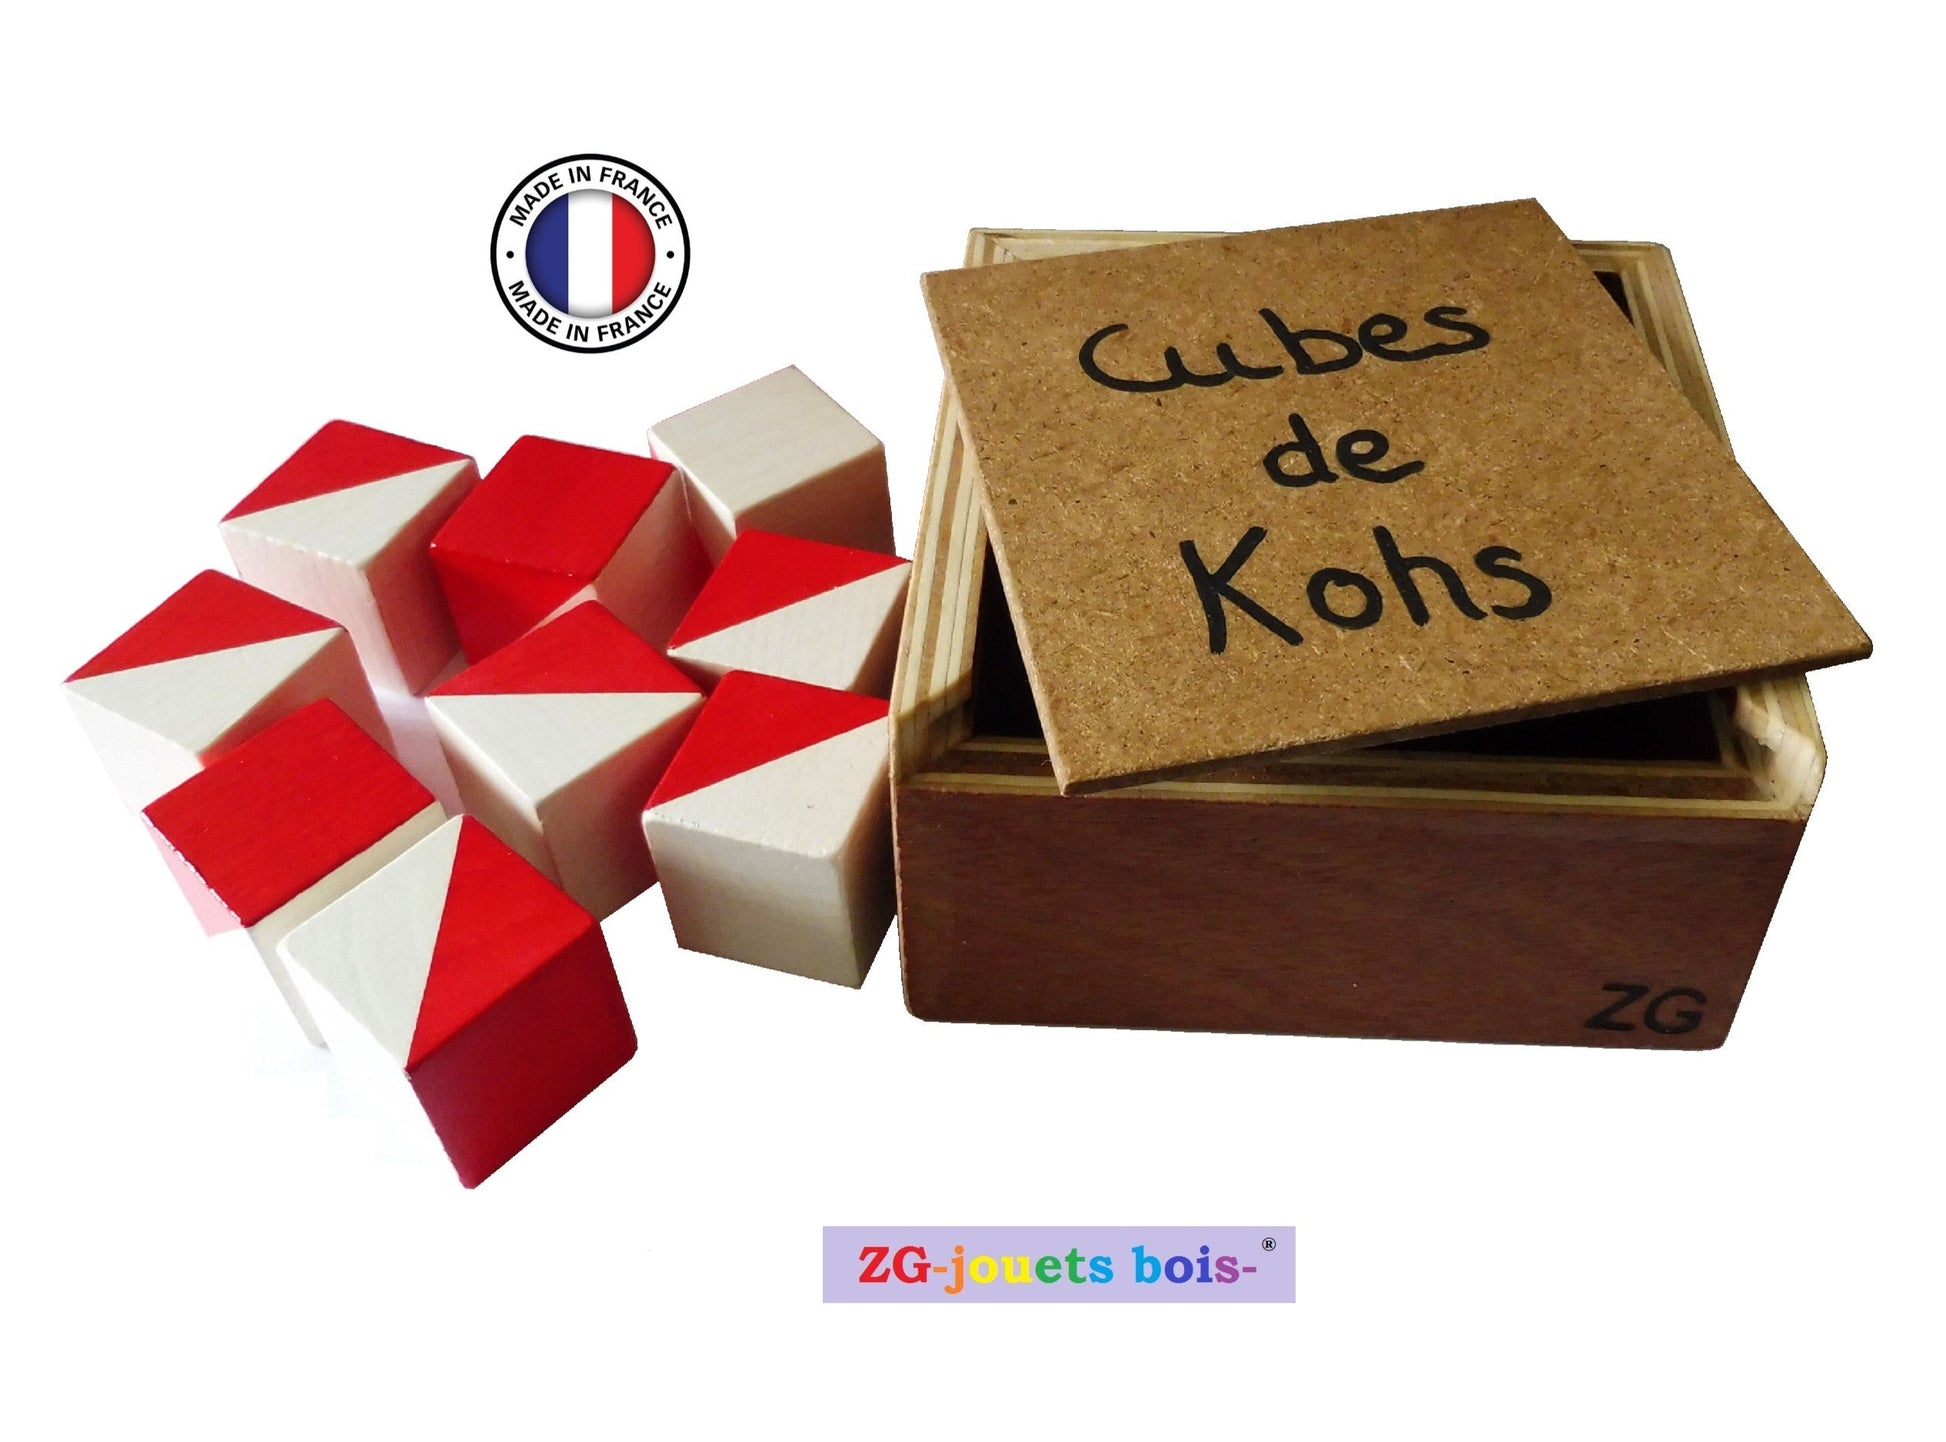 cubes de kohs test neuropsy zgjouetsbois fabrication artisanale française